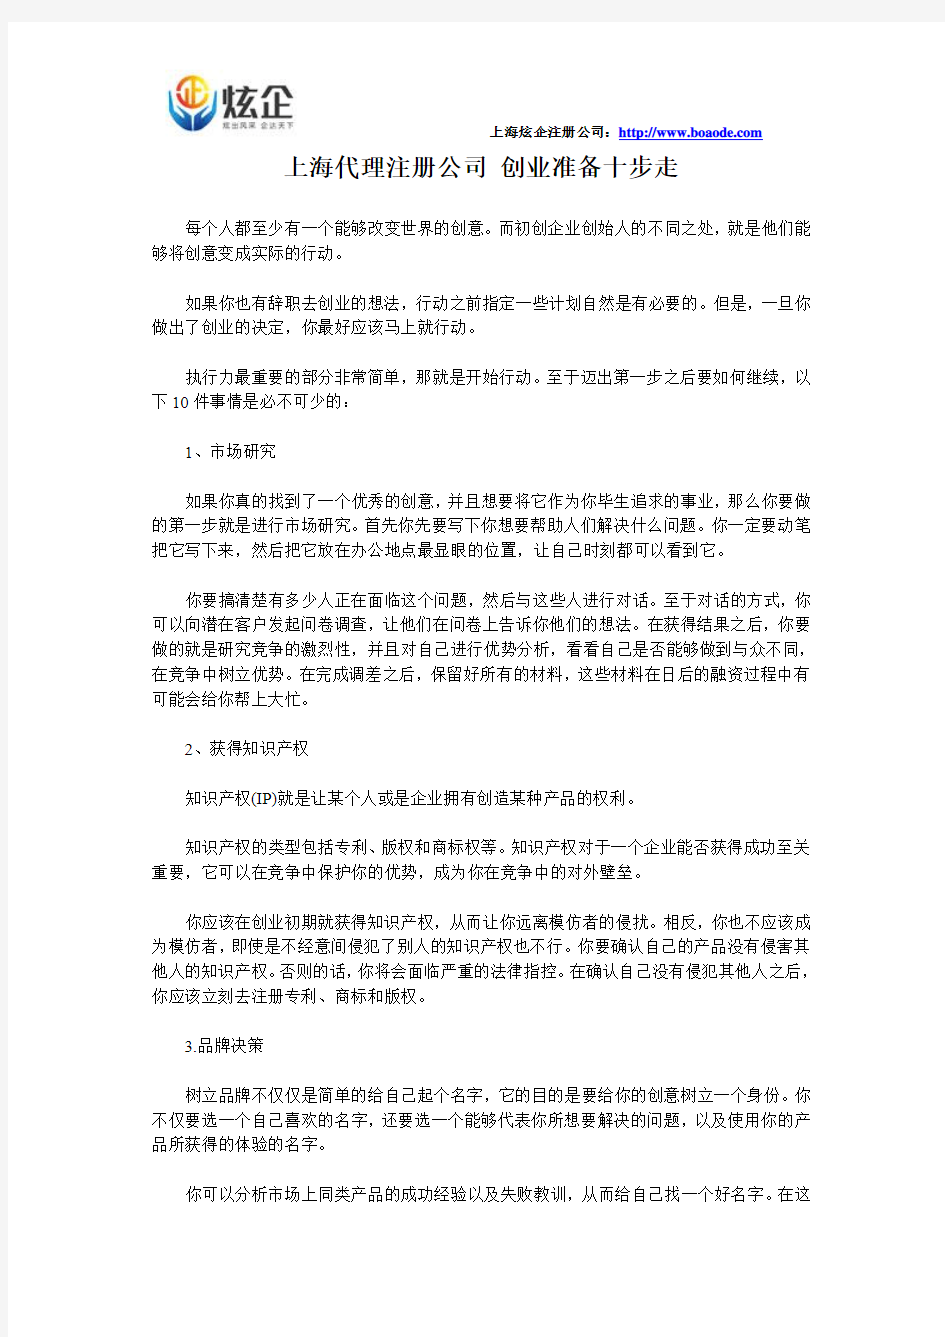 上海代理注册公司 创业准备十步走